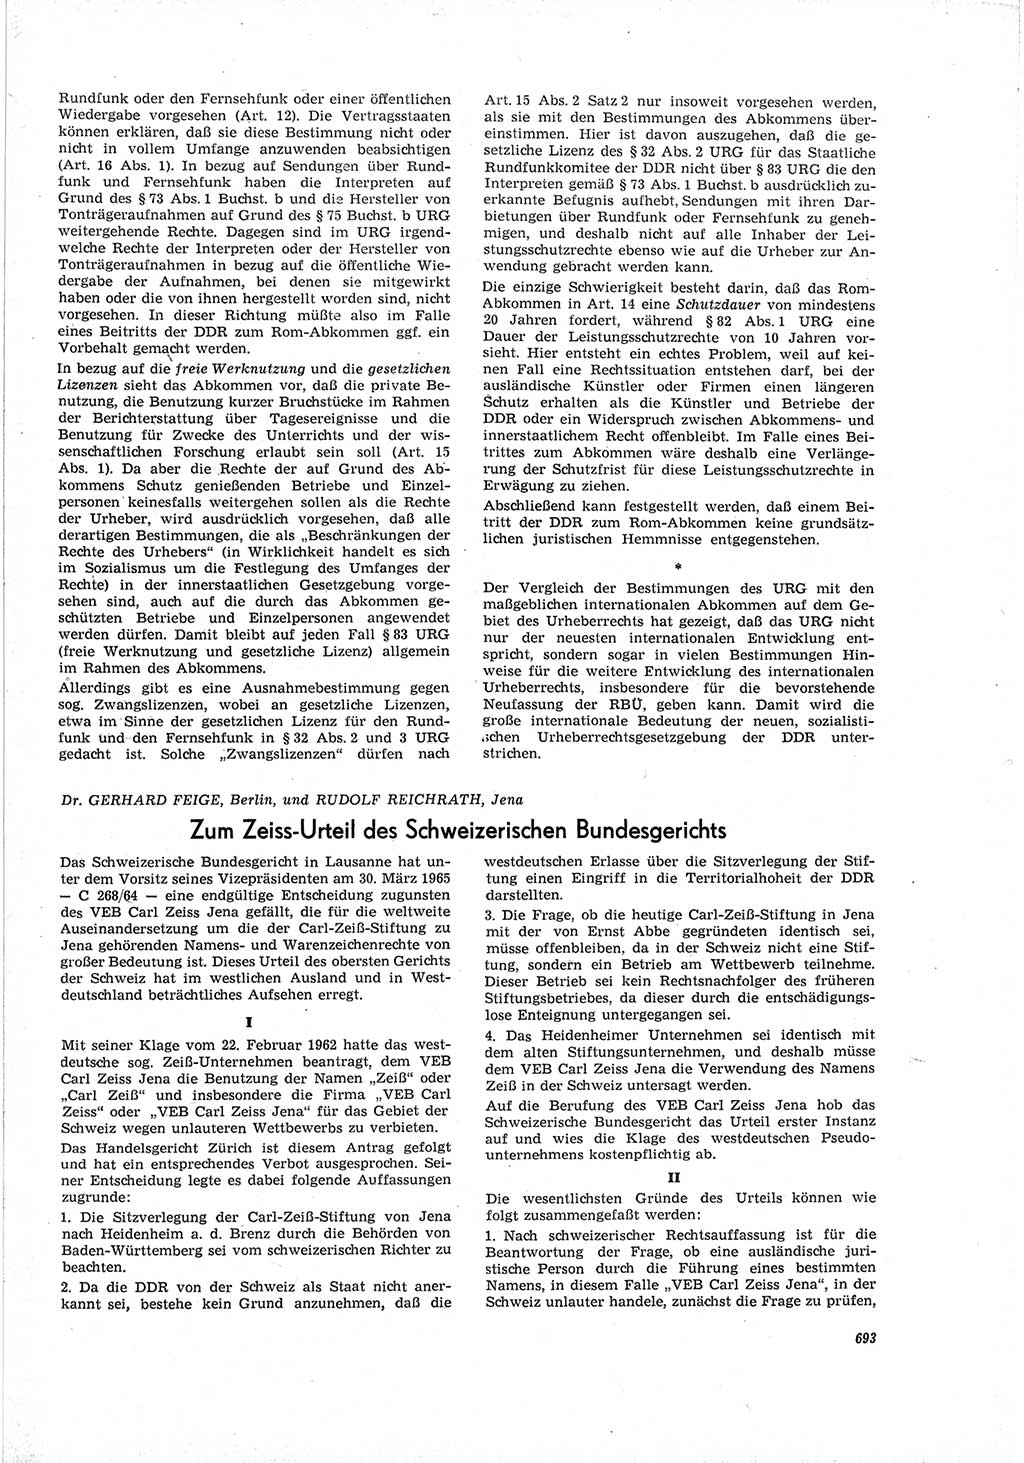 Neue Justiz (NJ), Zeitschrift für Recht und Rechtswissenschaft [Deutsche Demokratische Republik (DDR)], 19. Jahrgang 1965, Seite 693 (NJ DDR 1965, S. 693)